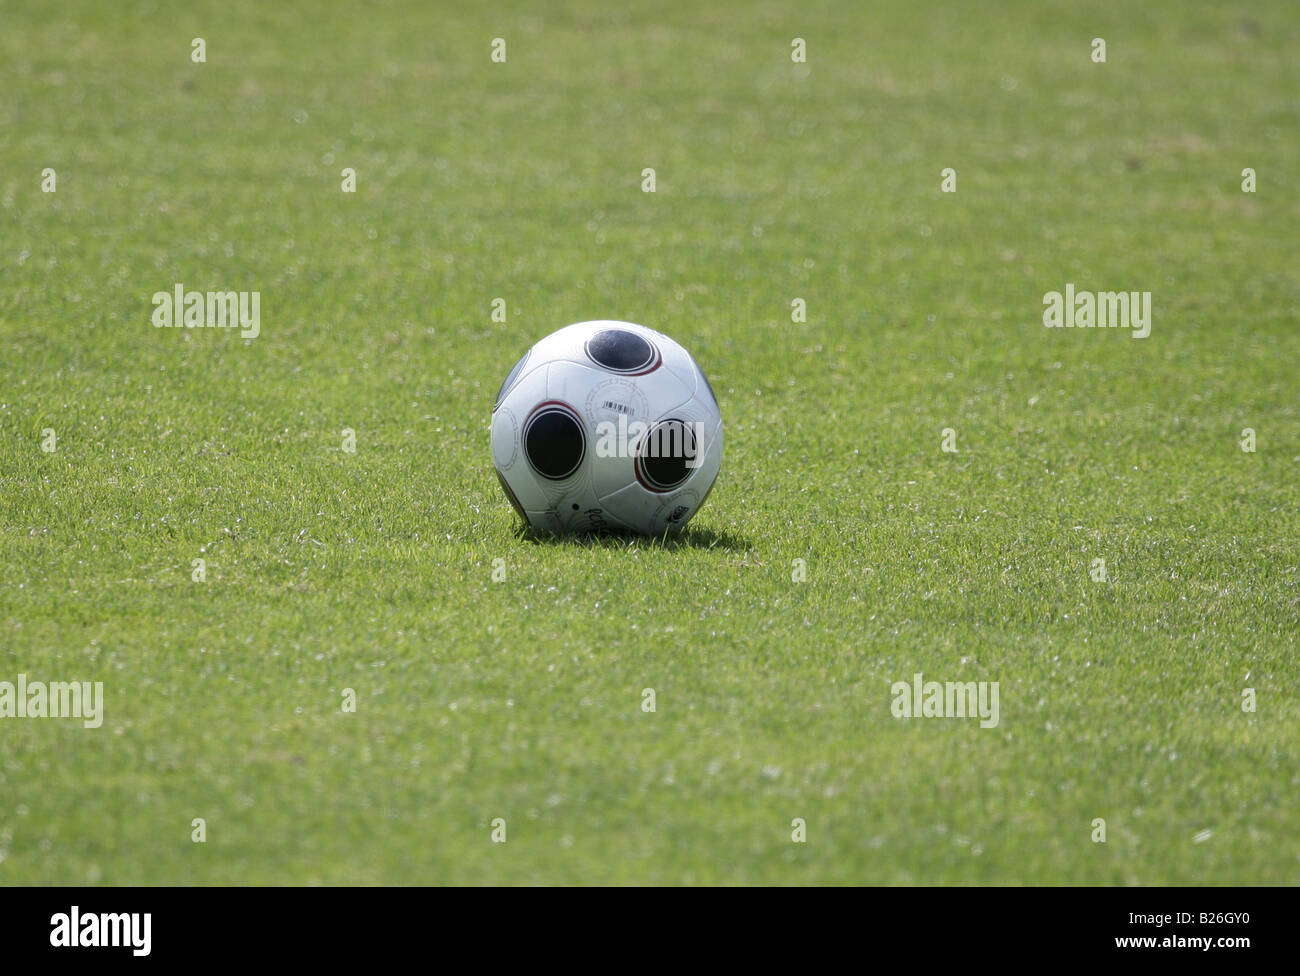 Ballon de soccer sur un terrain herbeux. Banque D'Images